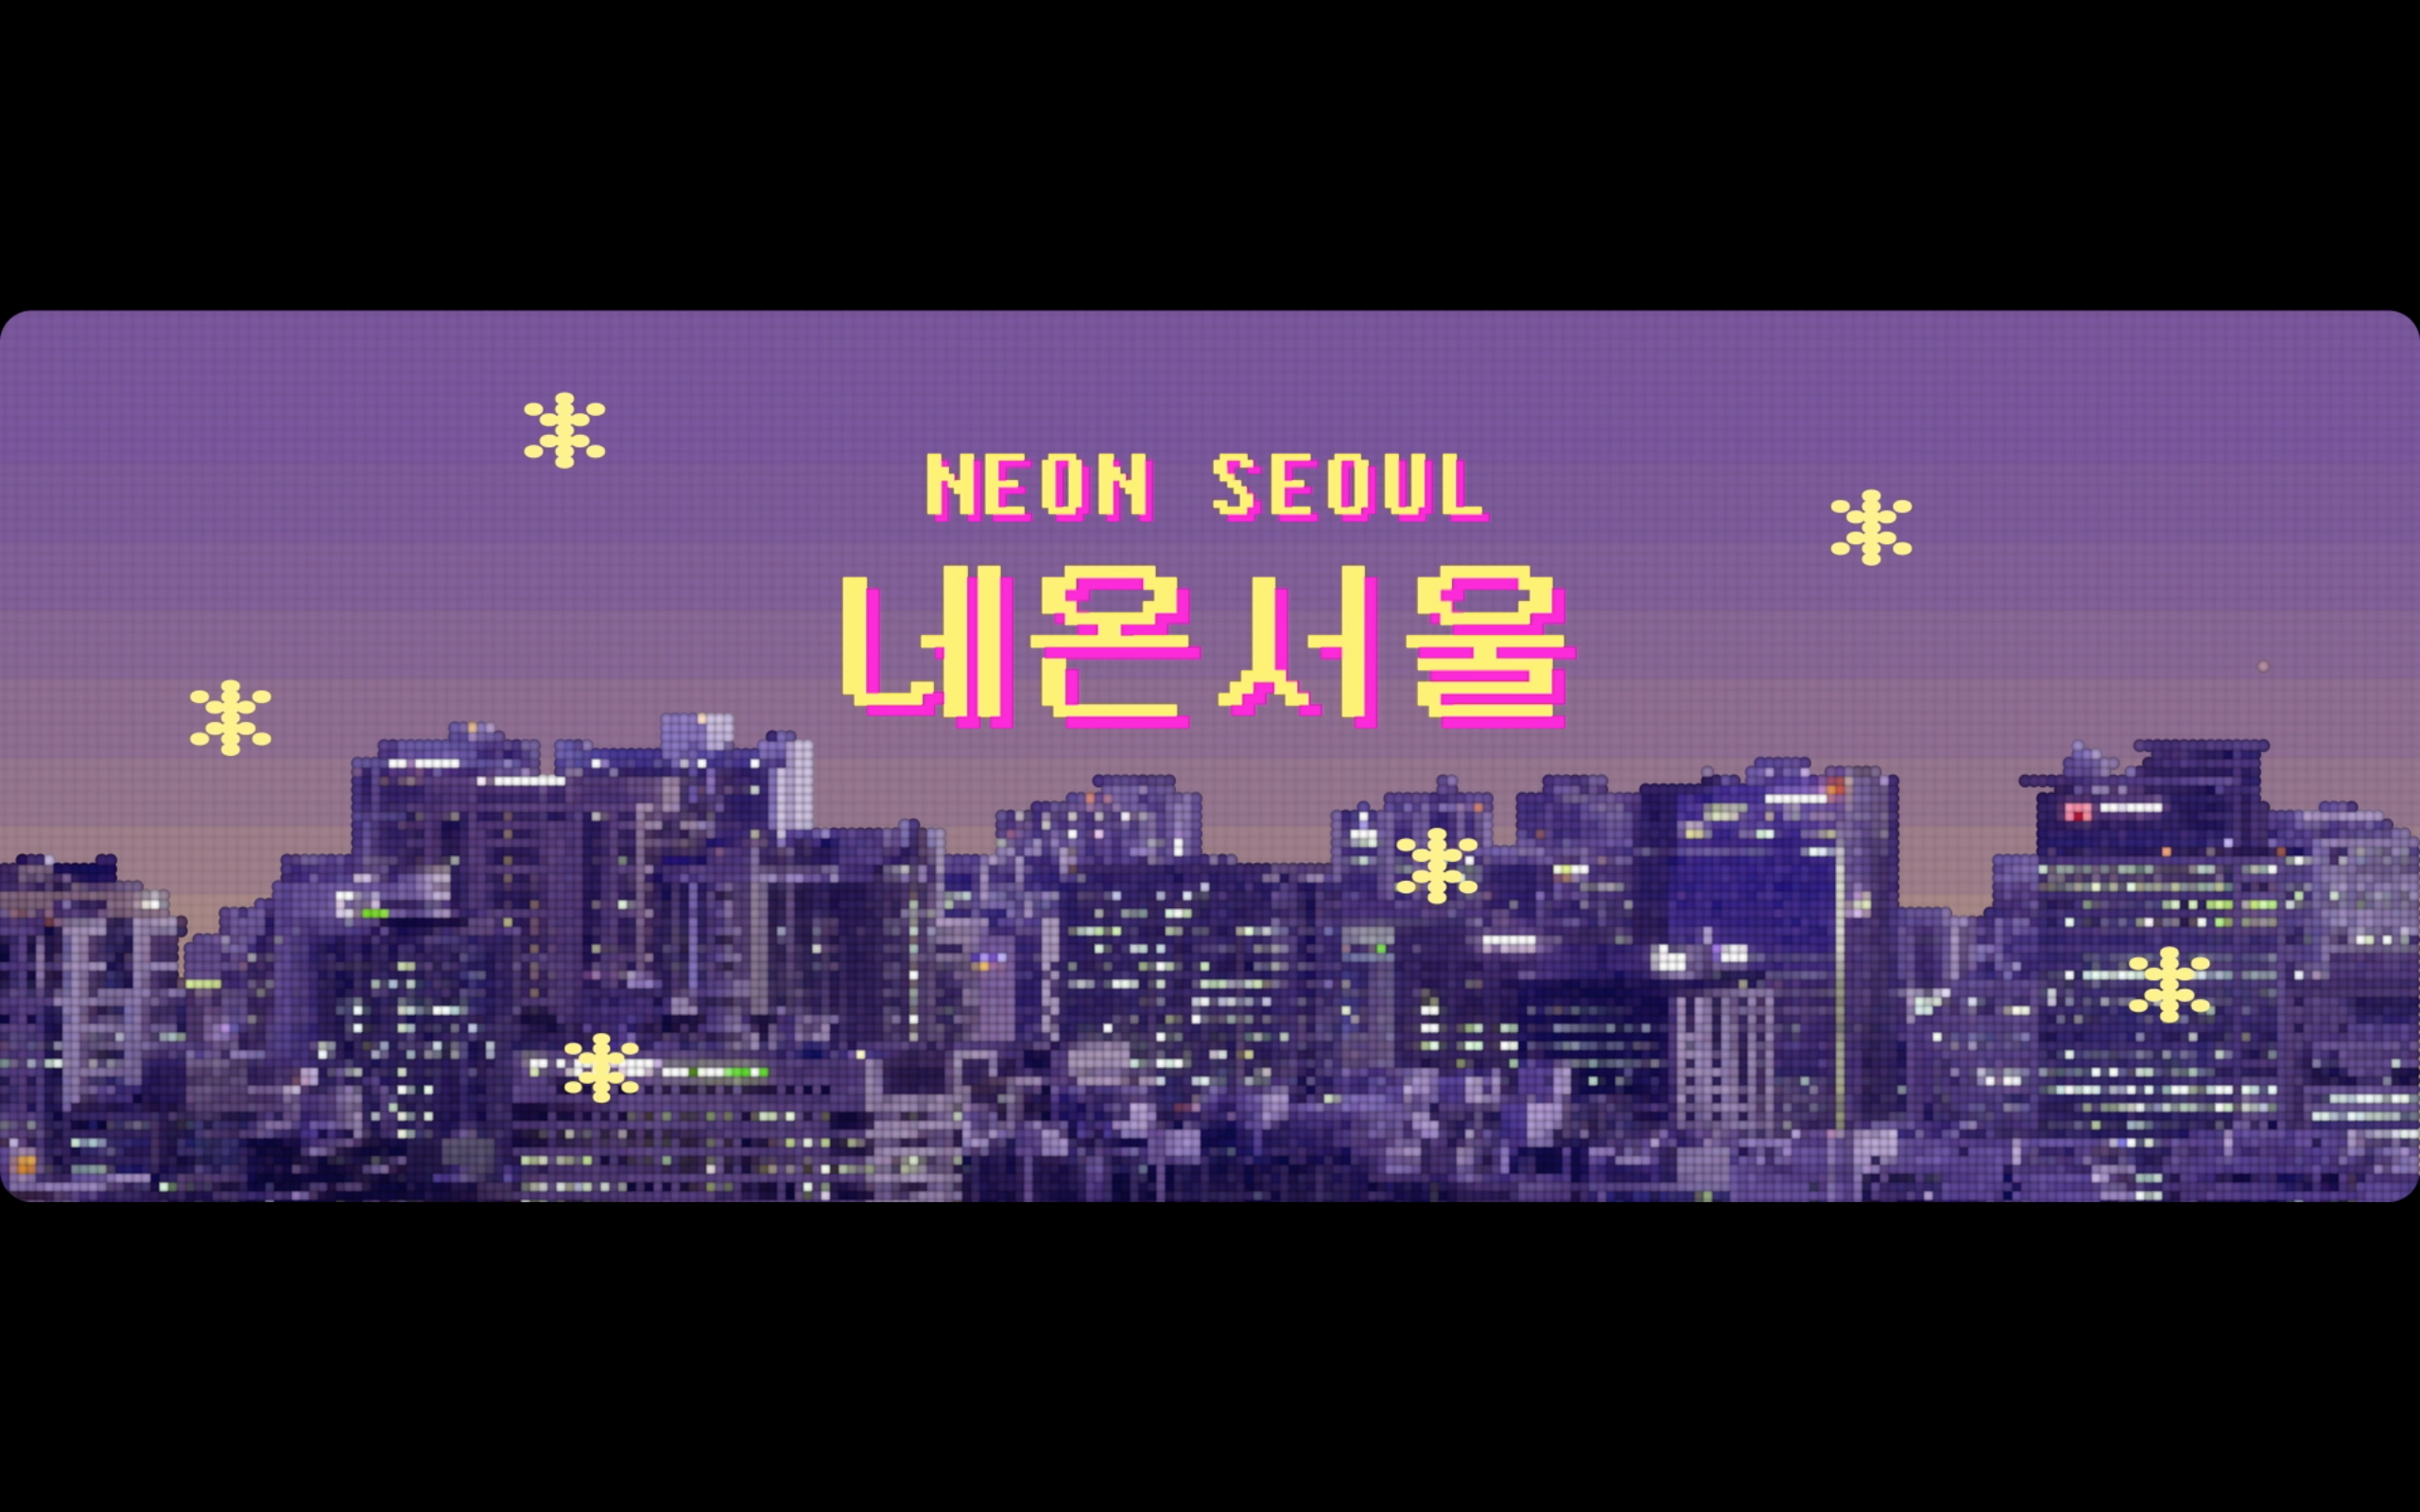 [네온서울] NEON SEOUL / 감각의제국, 망우삼림, 미지의세계, 아트몬스터